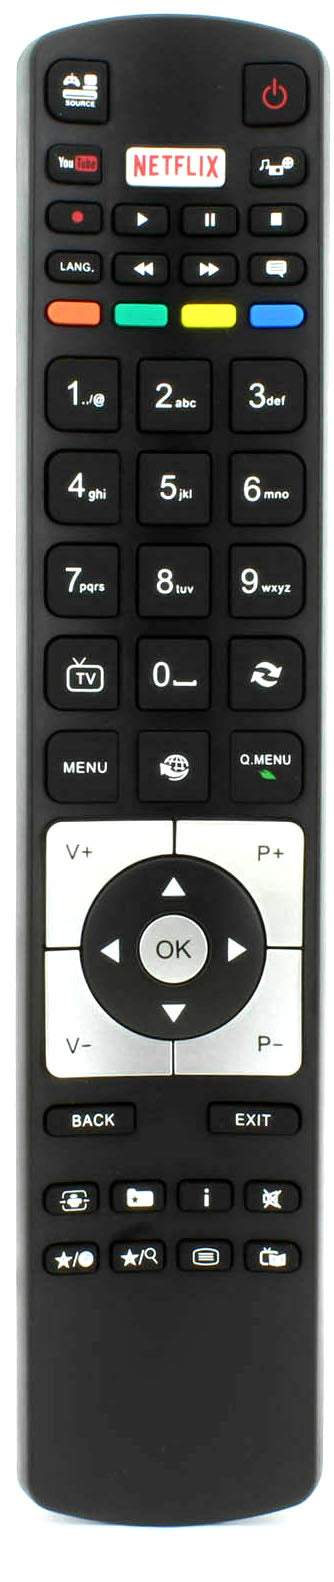 Bush TV Remote Control UK